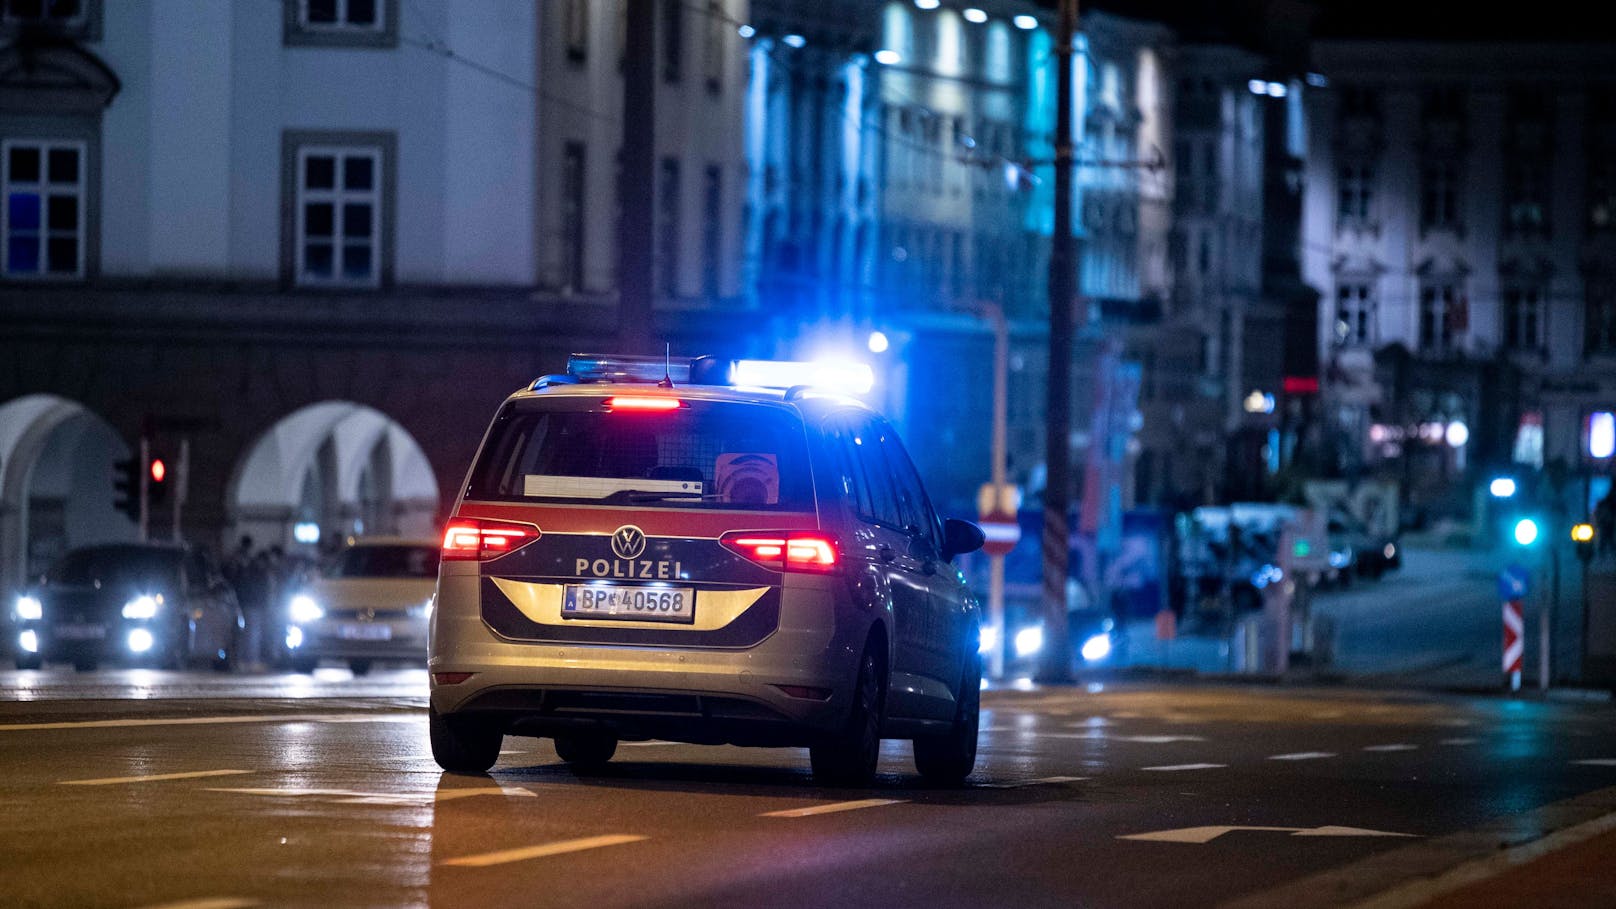 Mann sieht Polizist in Wien und läuft sofort davon